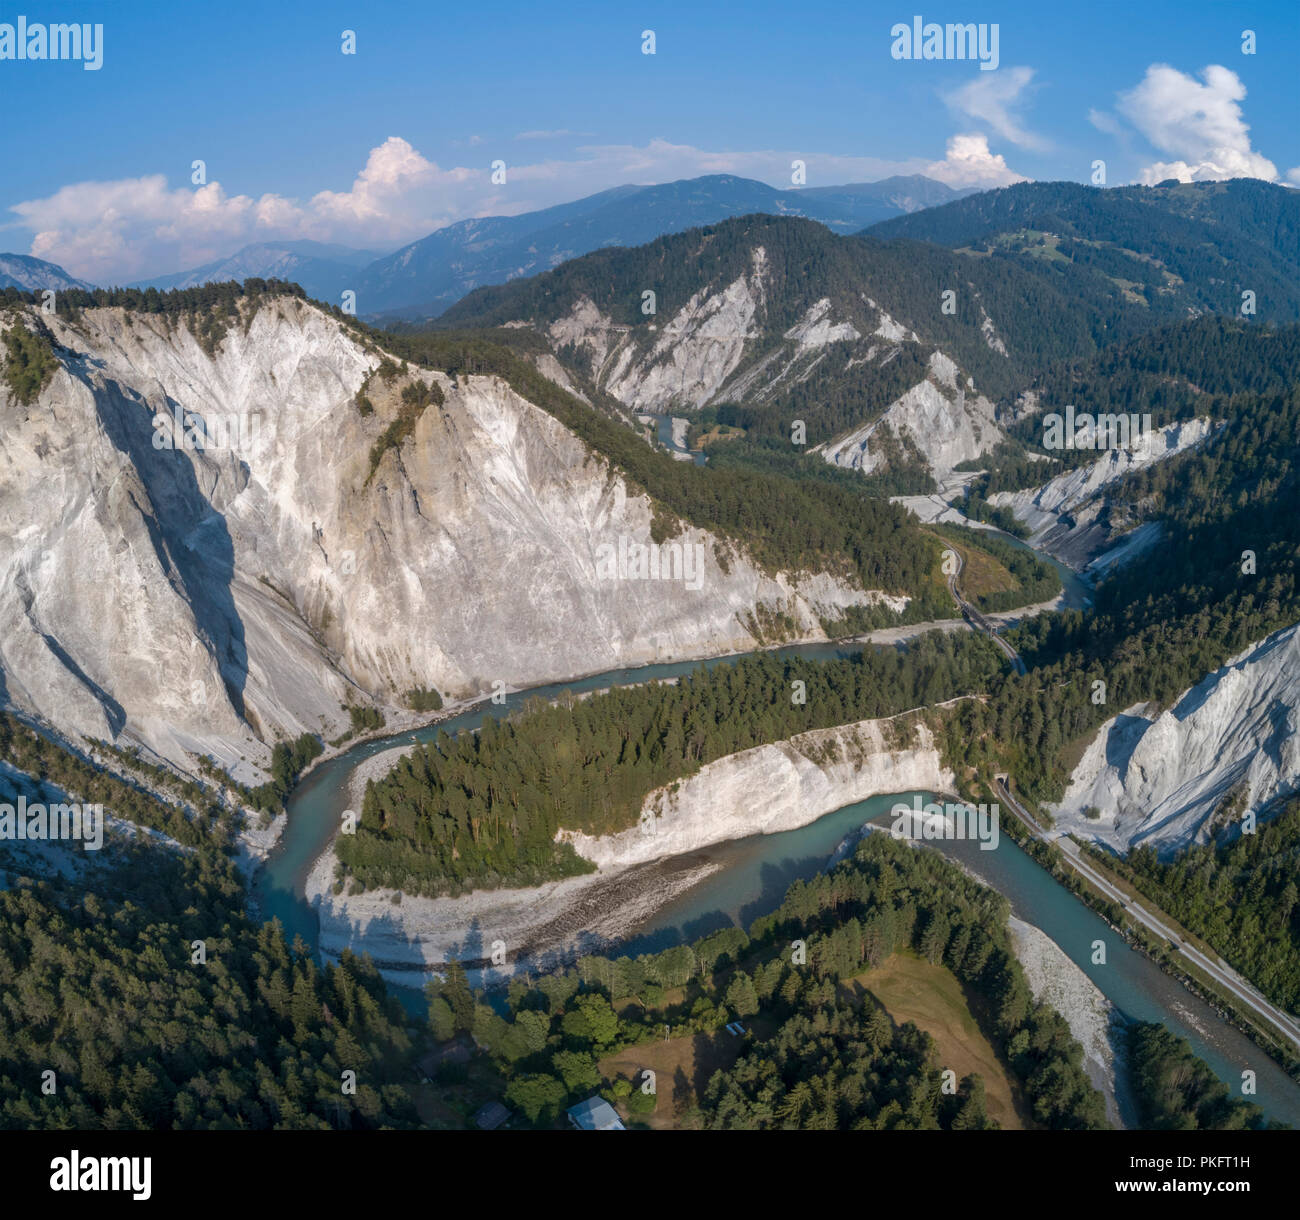 Meandros en la joven Rin, Rin Gorge, Ruinaulta, Versam, cantón de Los Grisones, Suiza Foto de stock